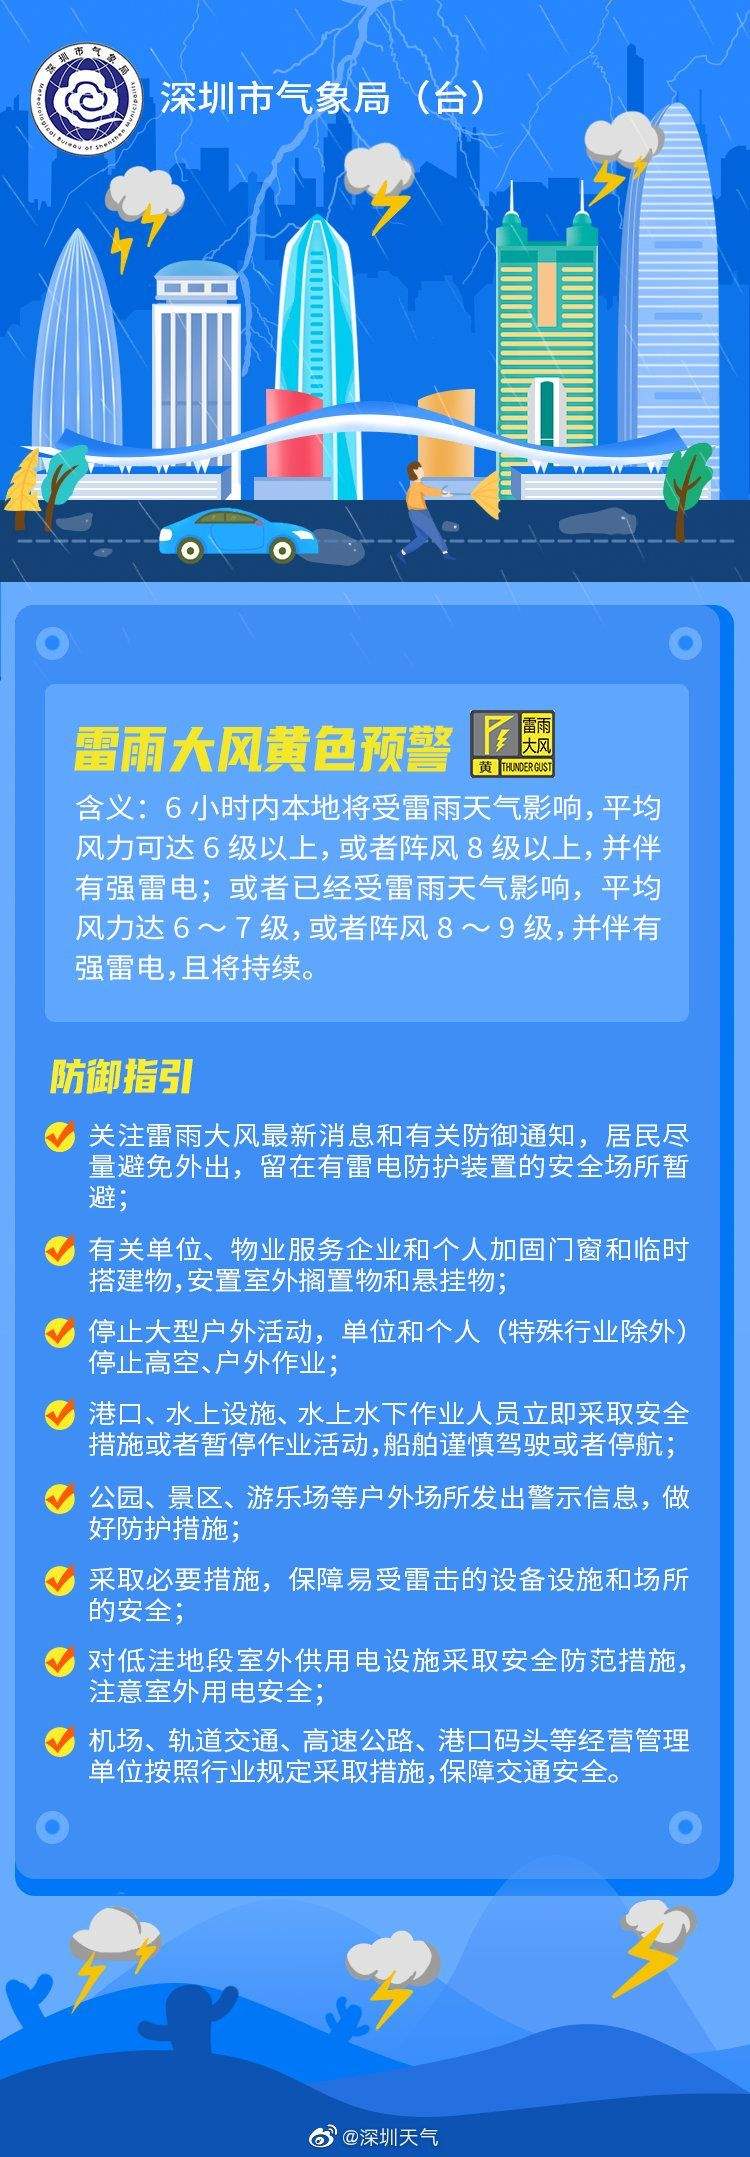 深圳市分区雷雨大风黄色预警+全市雷电预警生效中